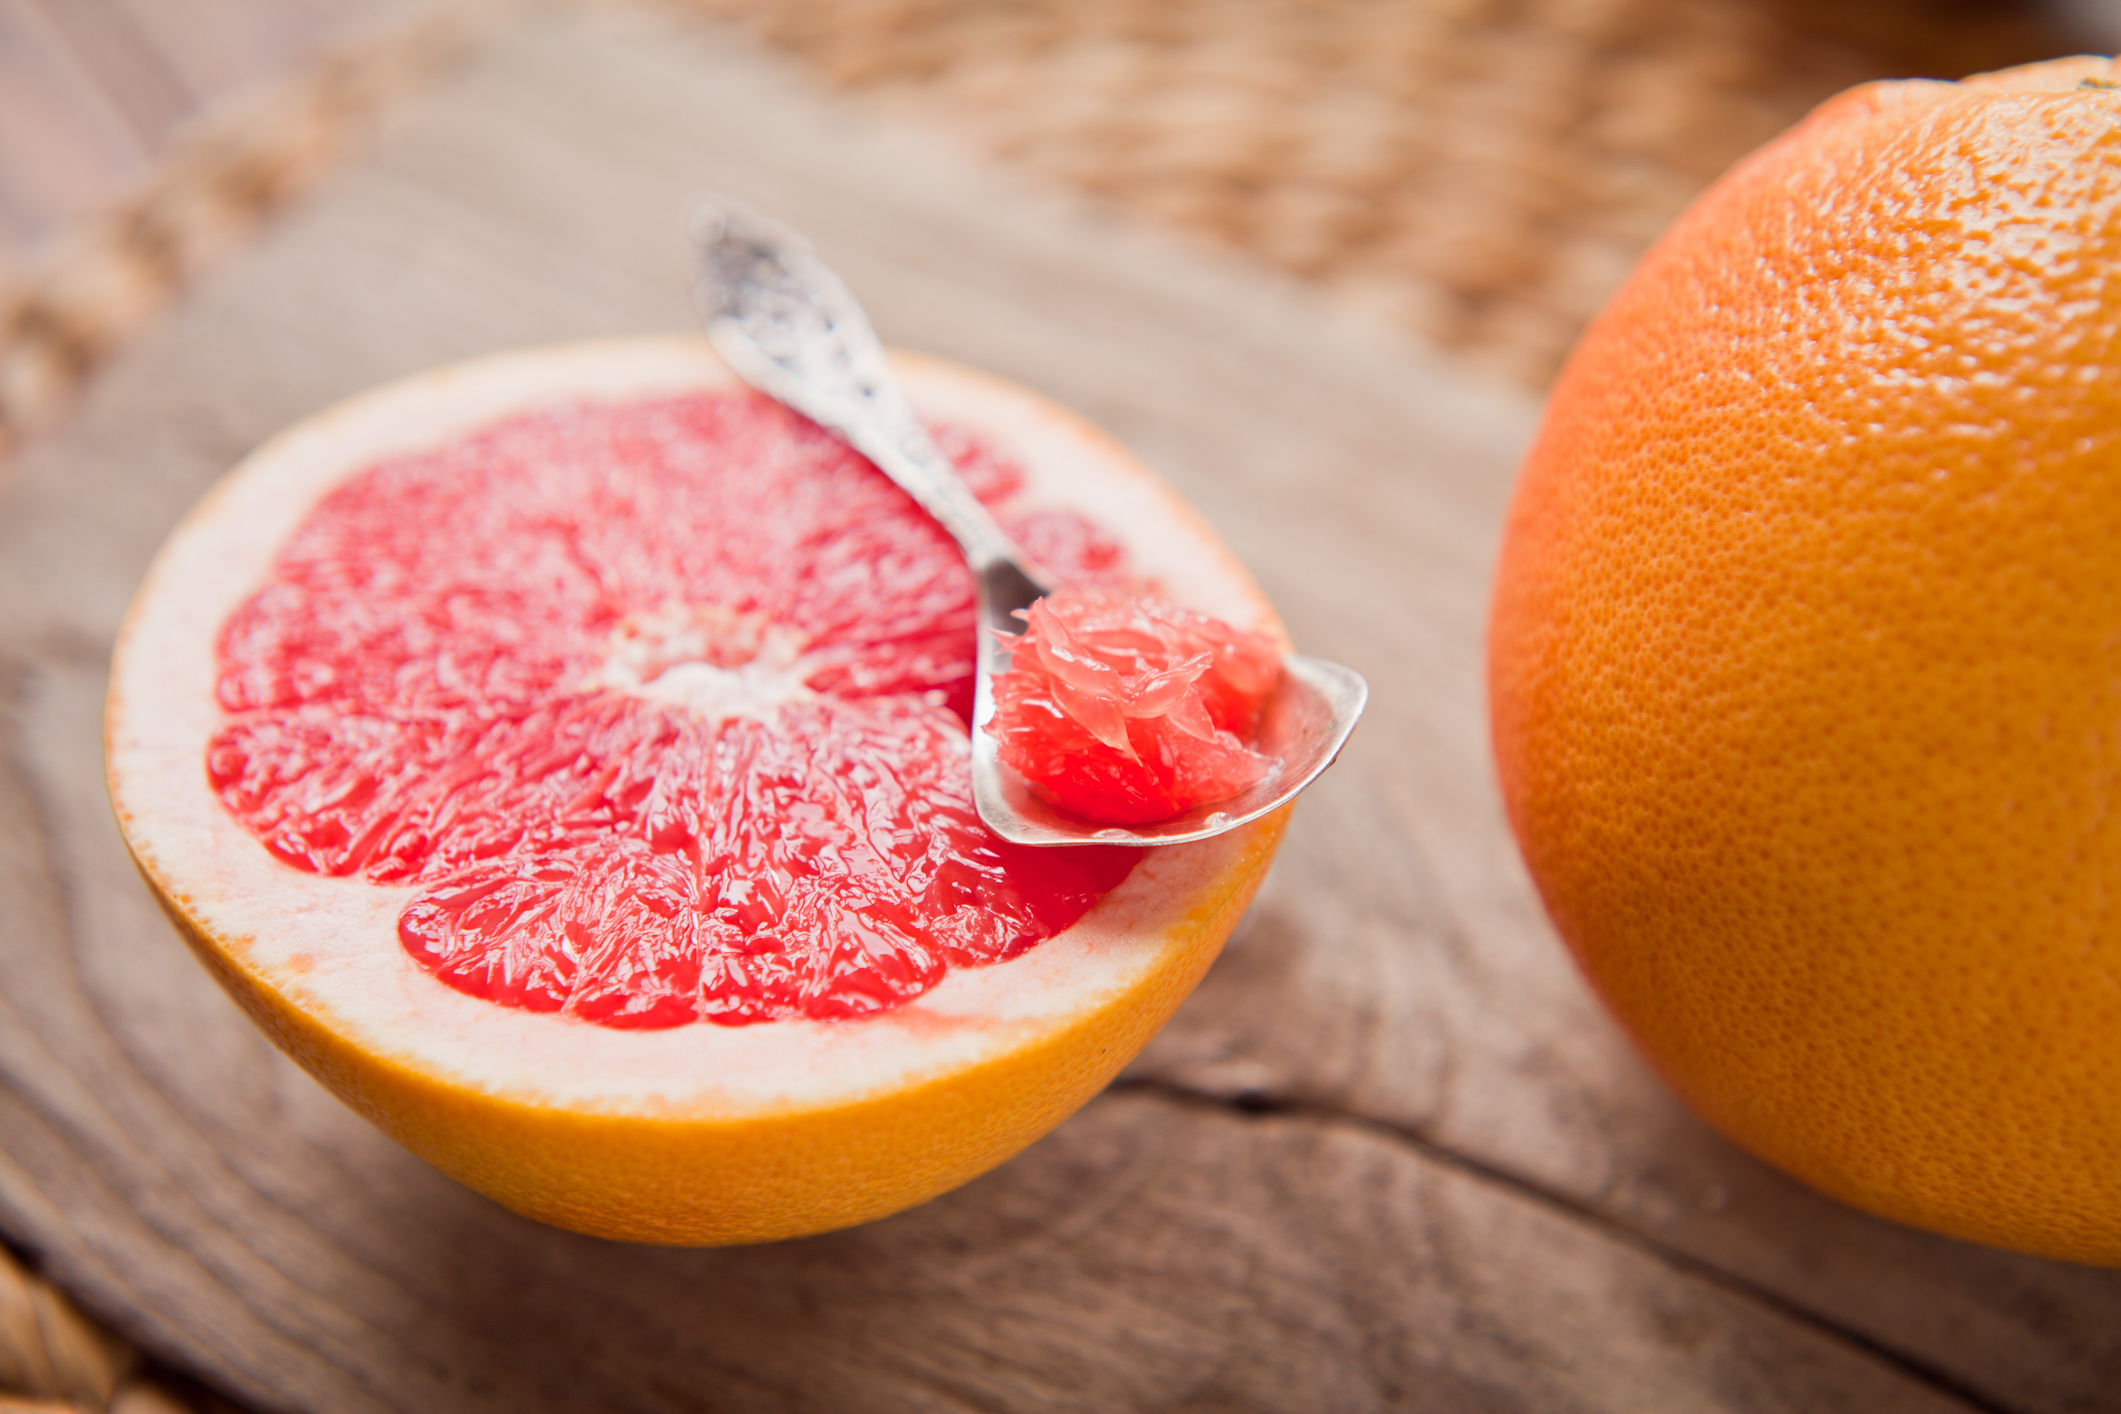 Грейпфрут<br />
С много витамини е и помага за разграждането на мазнините. Освен като сок, можете да го добавяте и към салати.